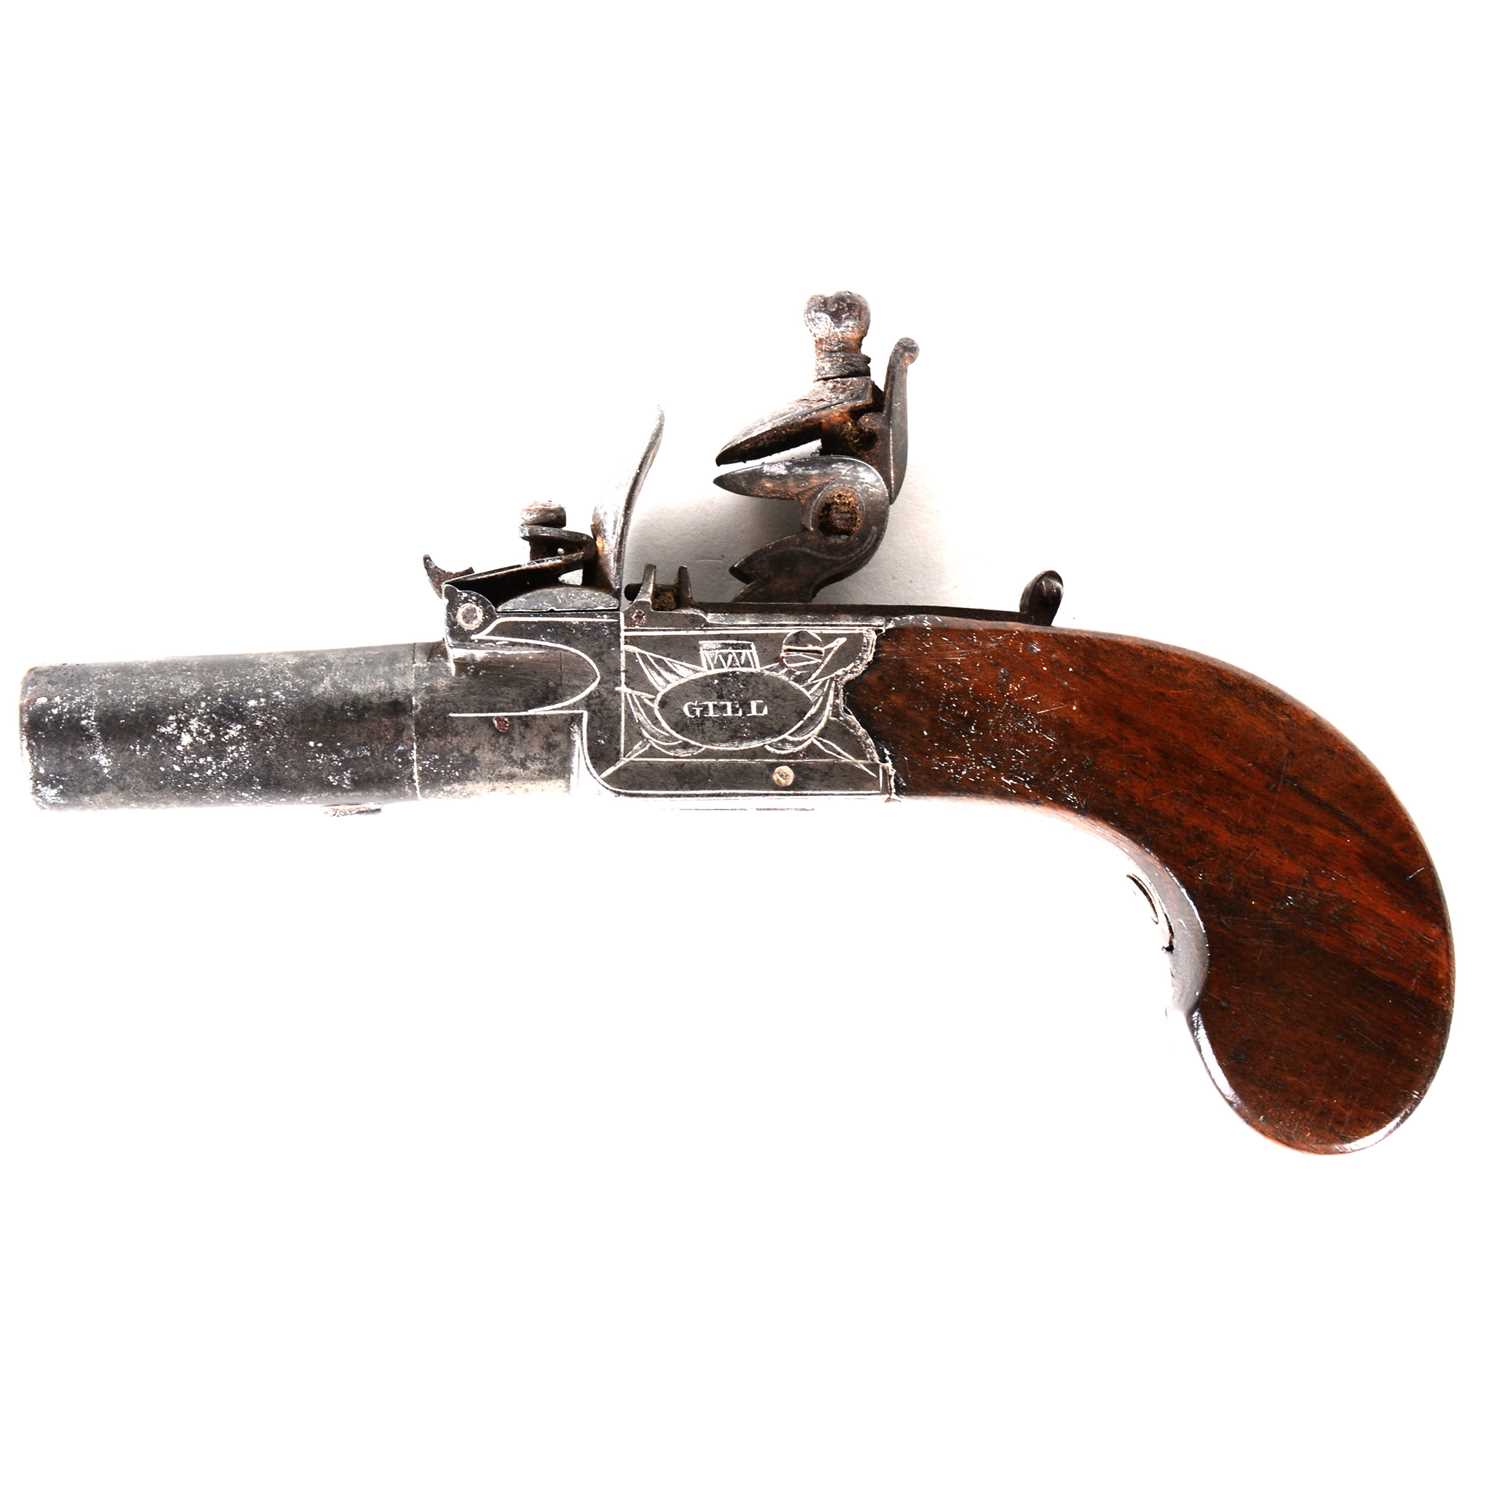 Lot 161 - A small English flintlock pistol, signed Gill London